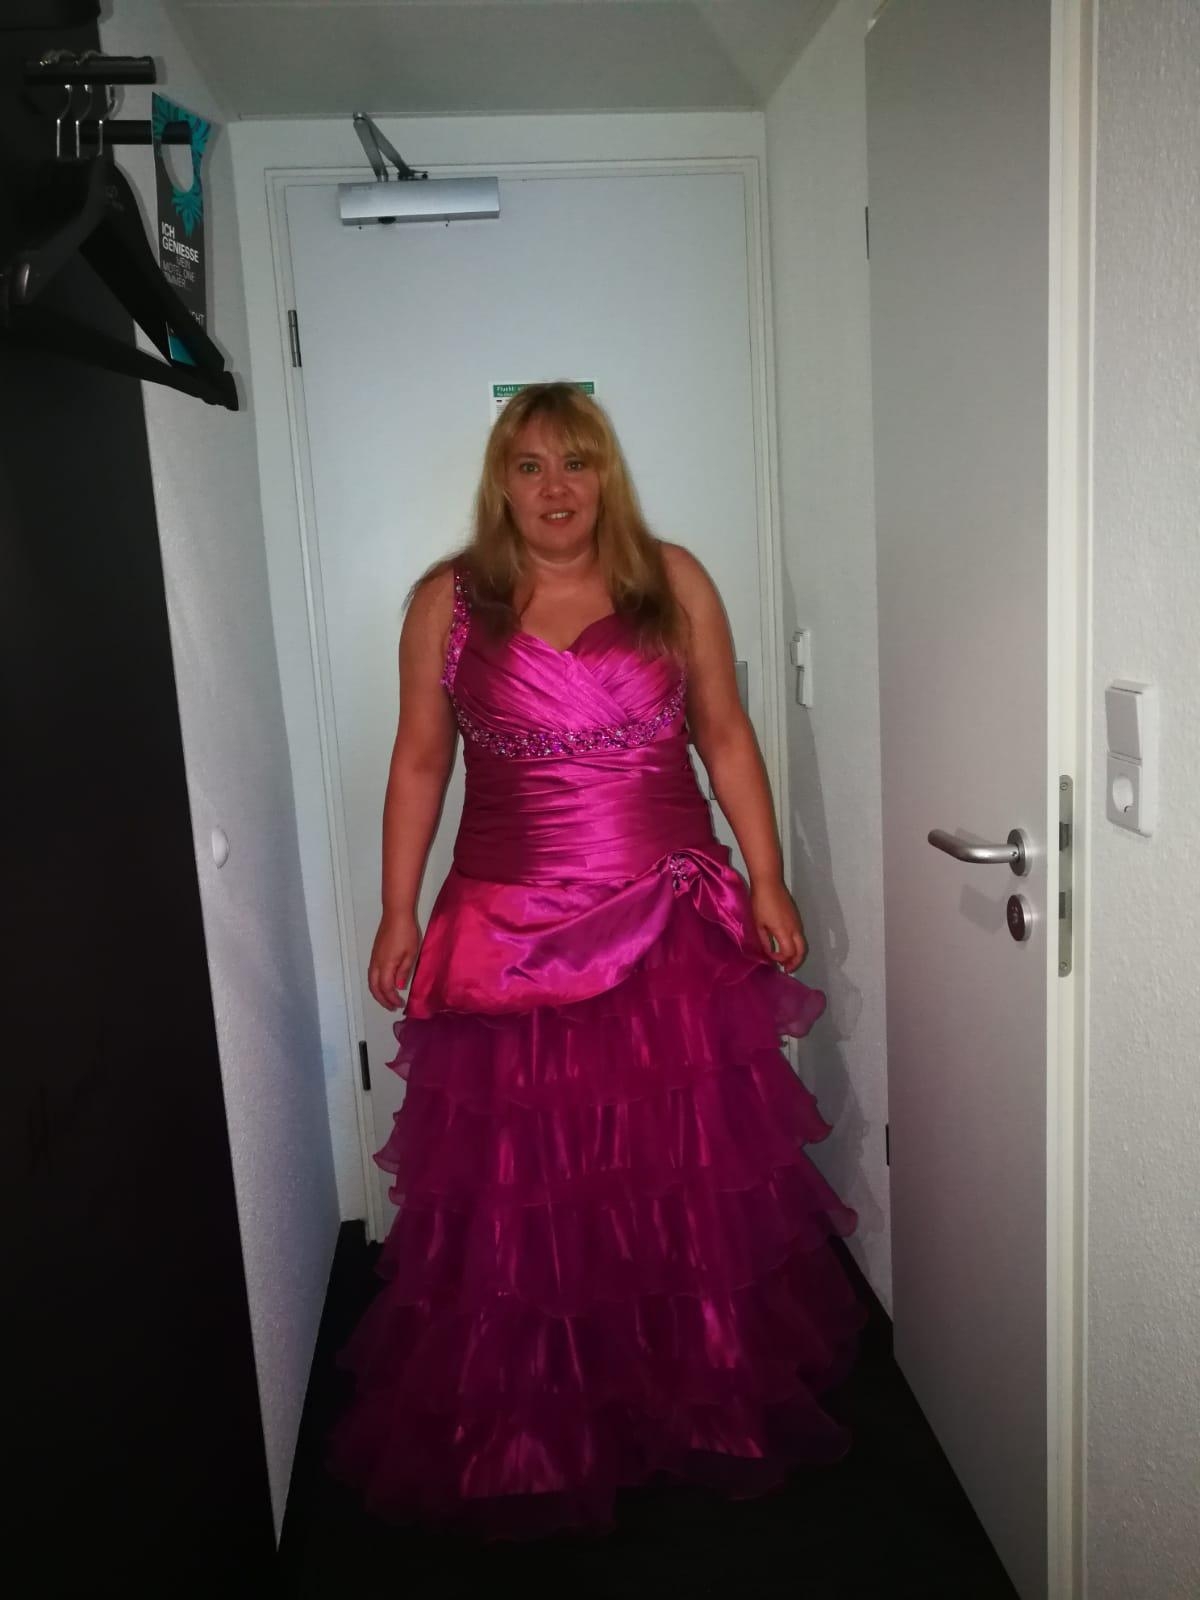 Habe mich getraut auf der Hochzeit meines Bruders ein langes Kleid anzuziehen wert 199 euro  #frühlingsoutfit #fashionch